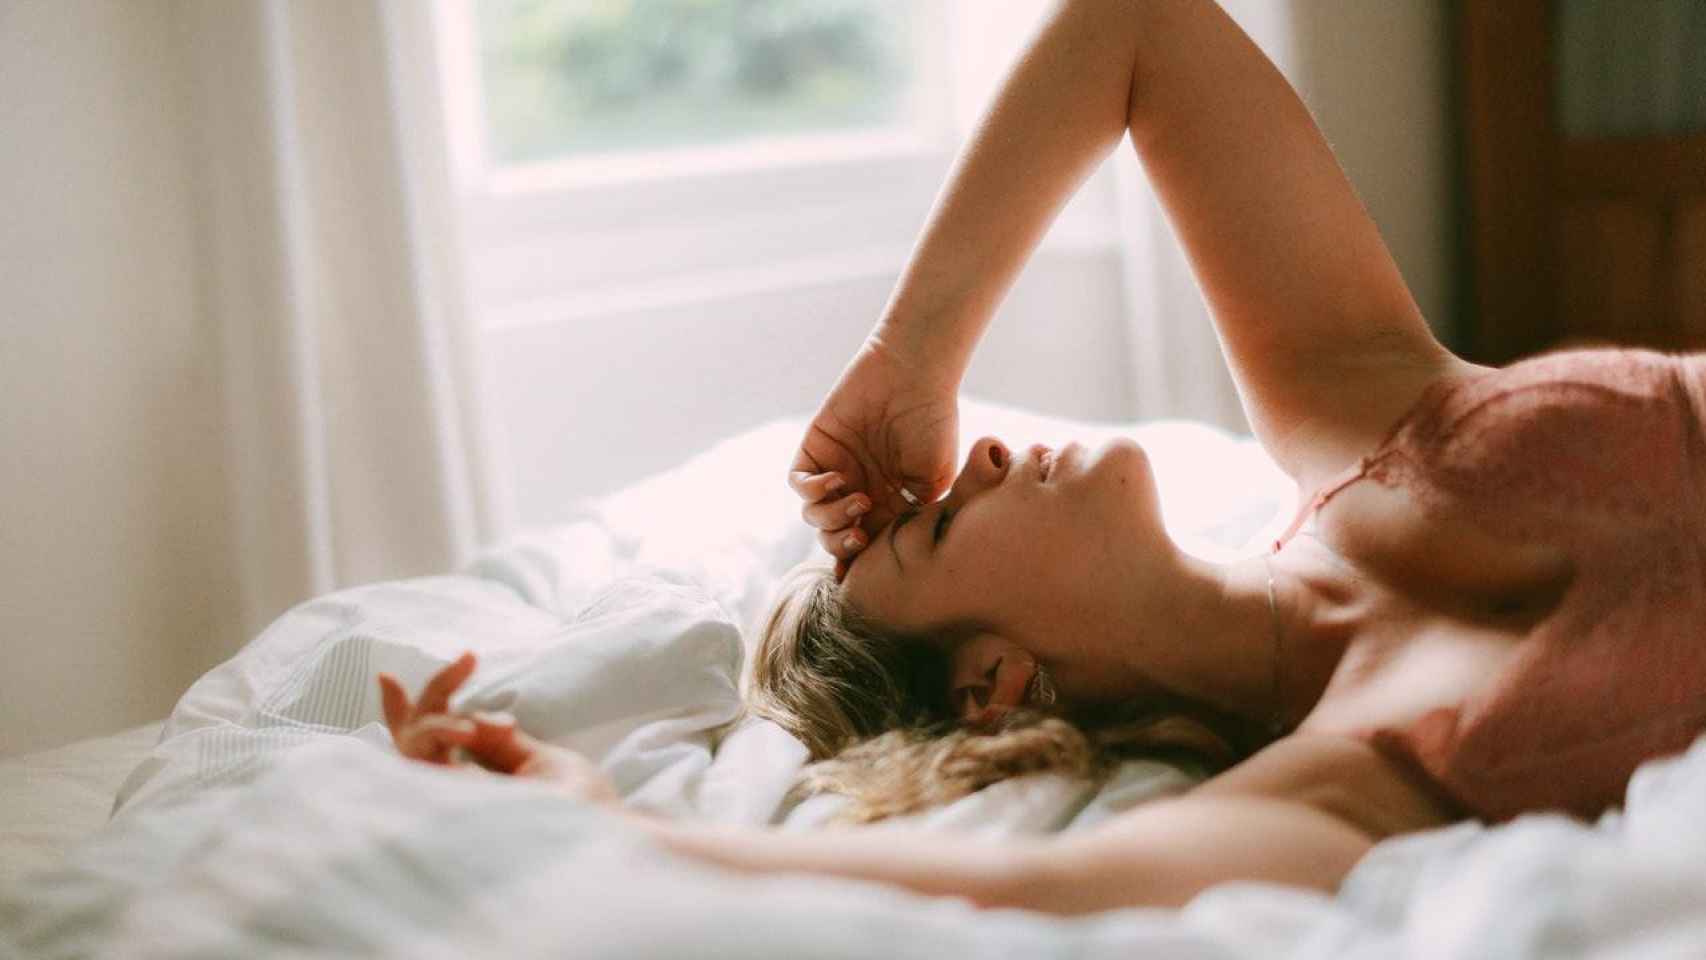 Una mujer en la cama después de masturbarse / CG